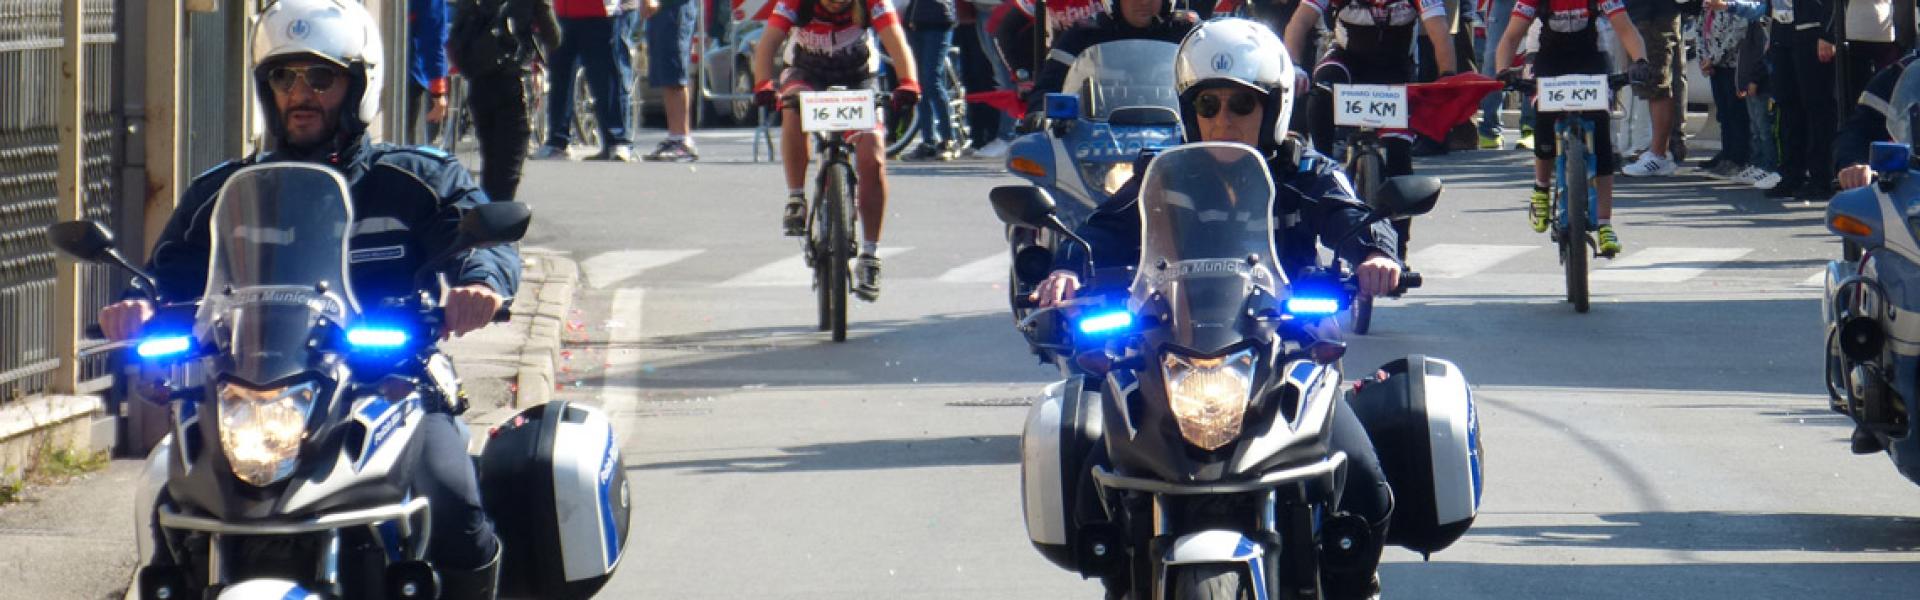 Motociclisti della Polizia Municipale di Rimini scortano una competizione sportiva